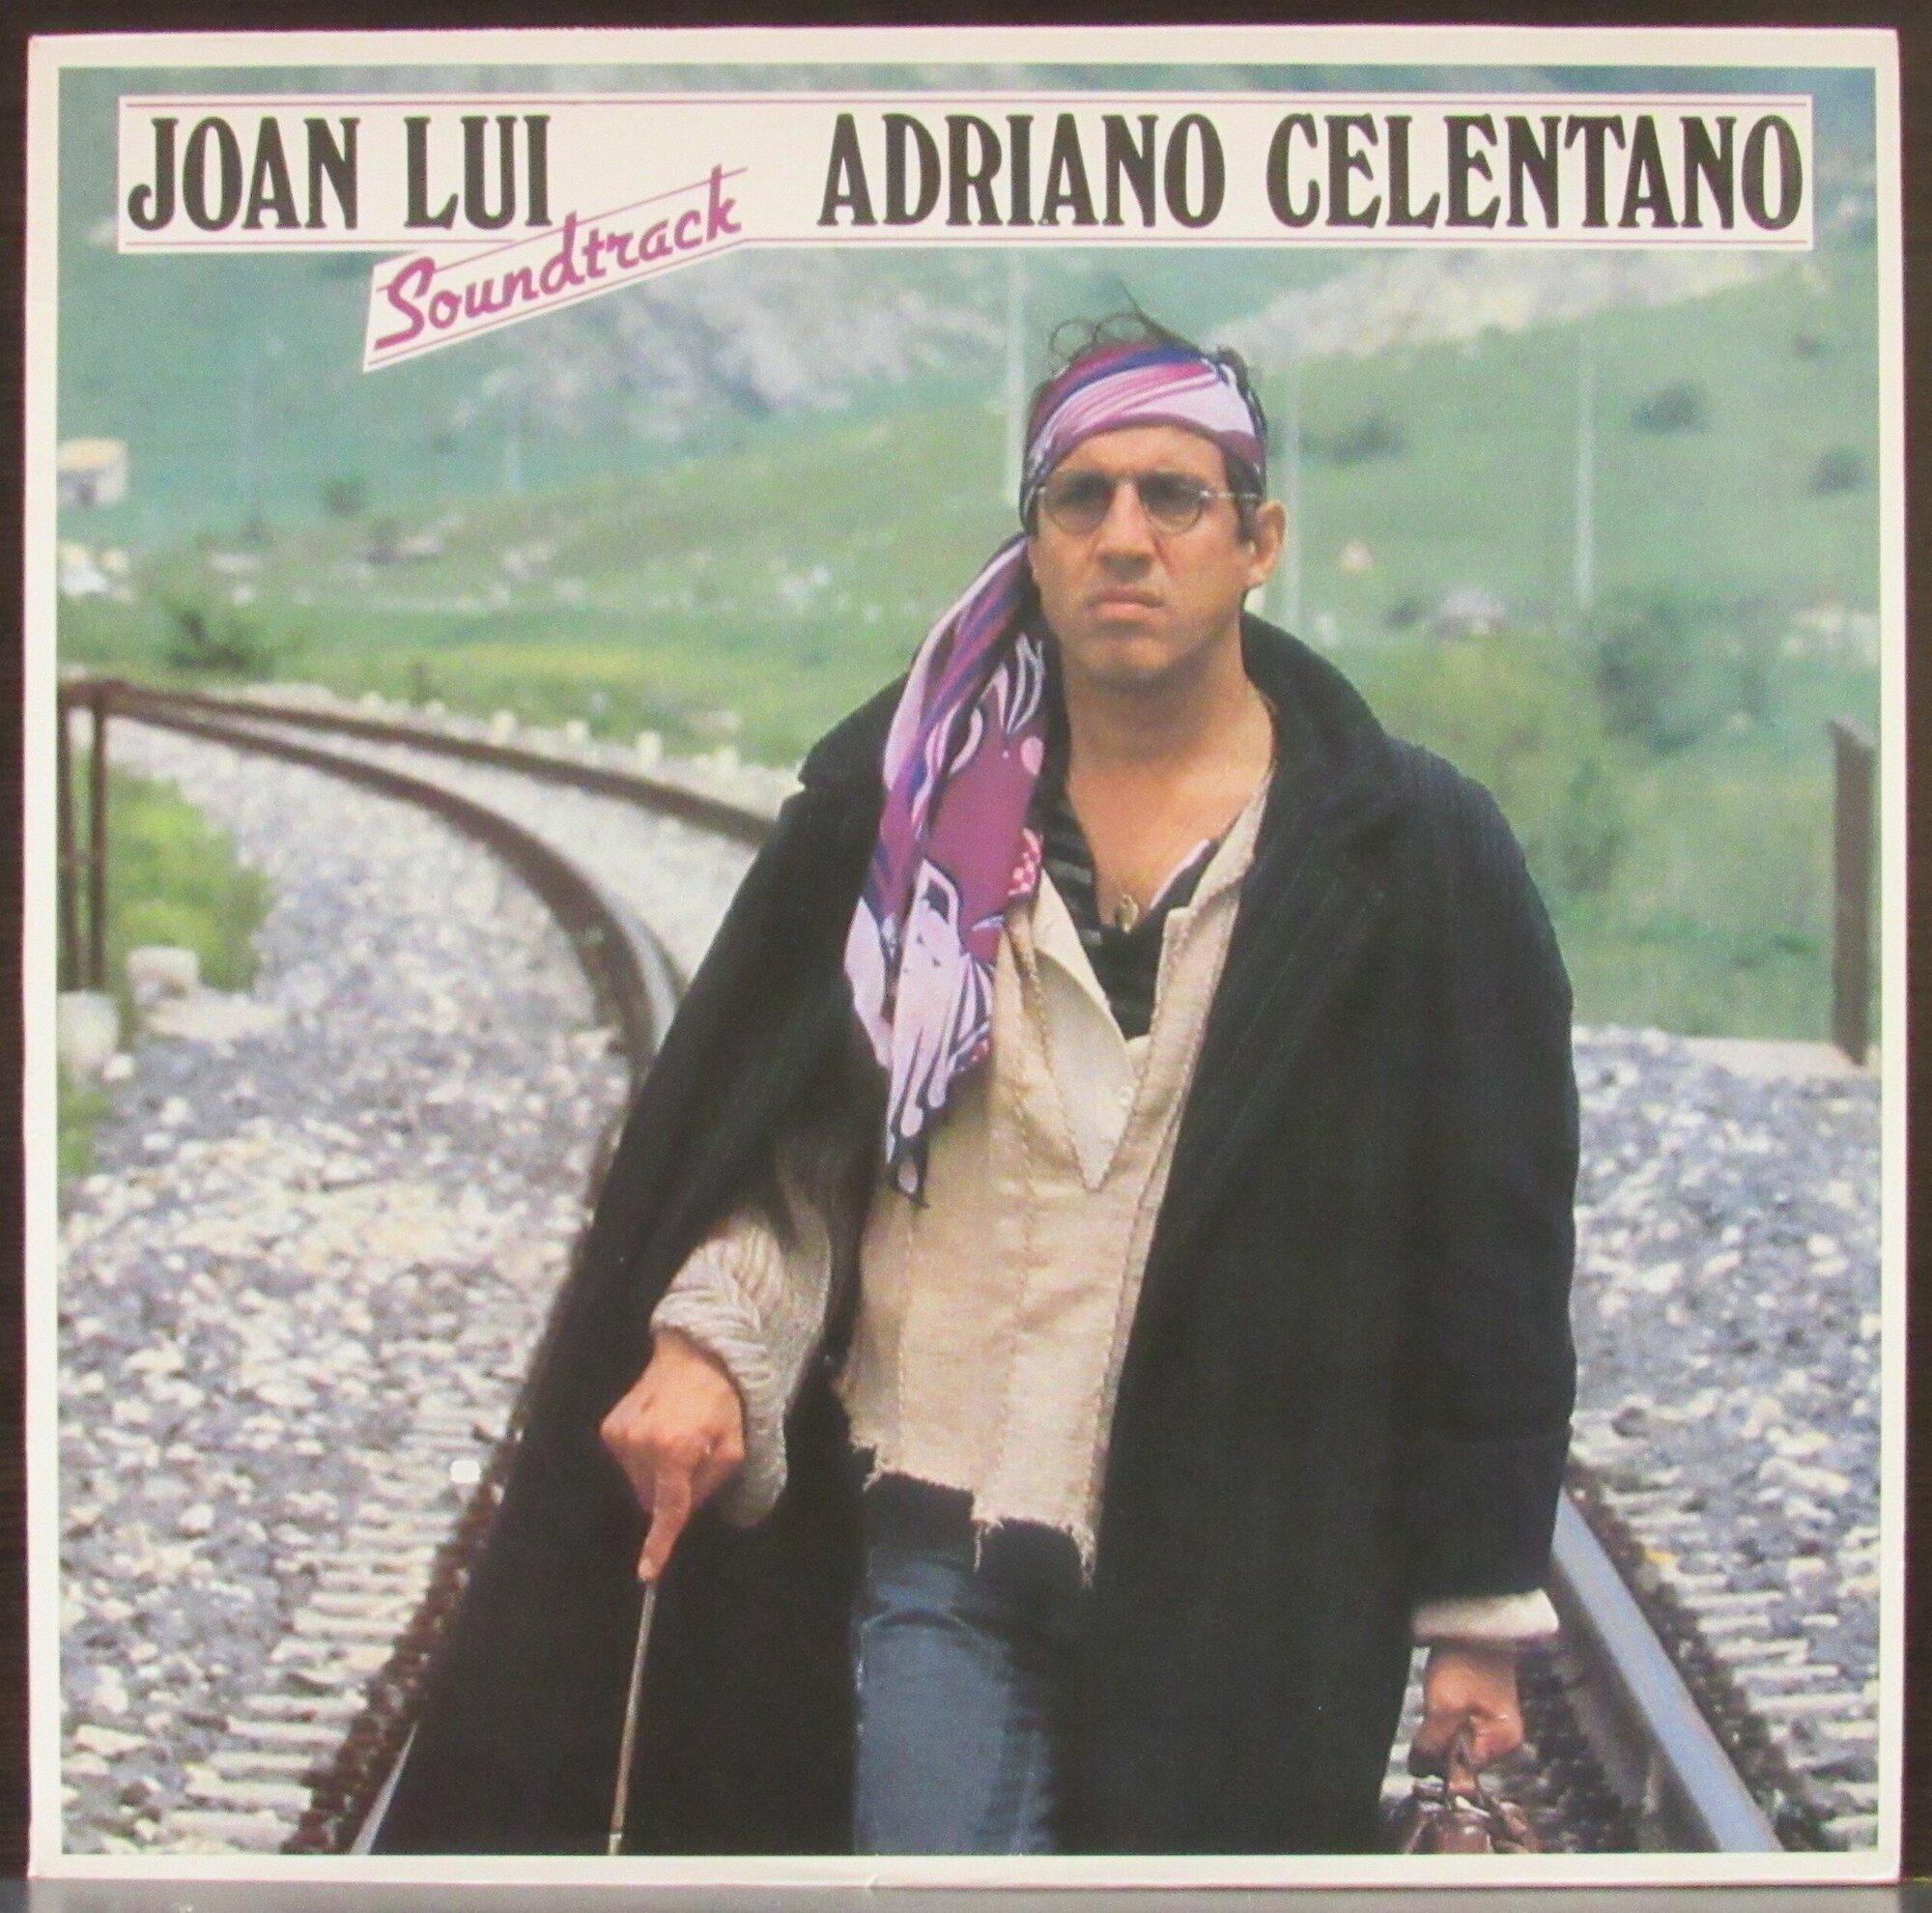 Celentano Adriano "Виниловая пластинка Celentano Adriano Joan Lui Soundtrack"